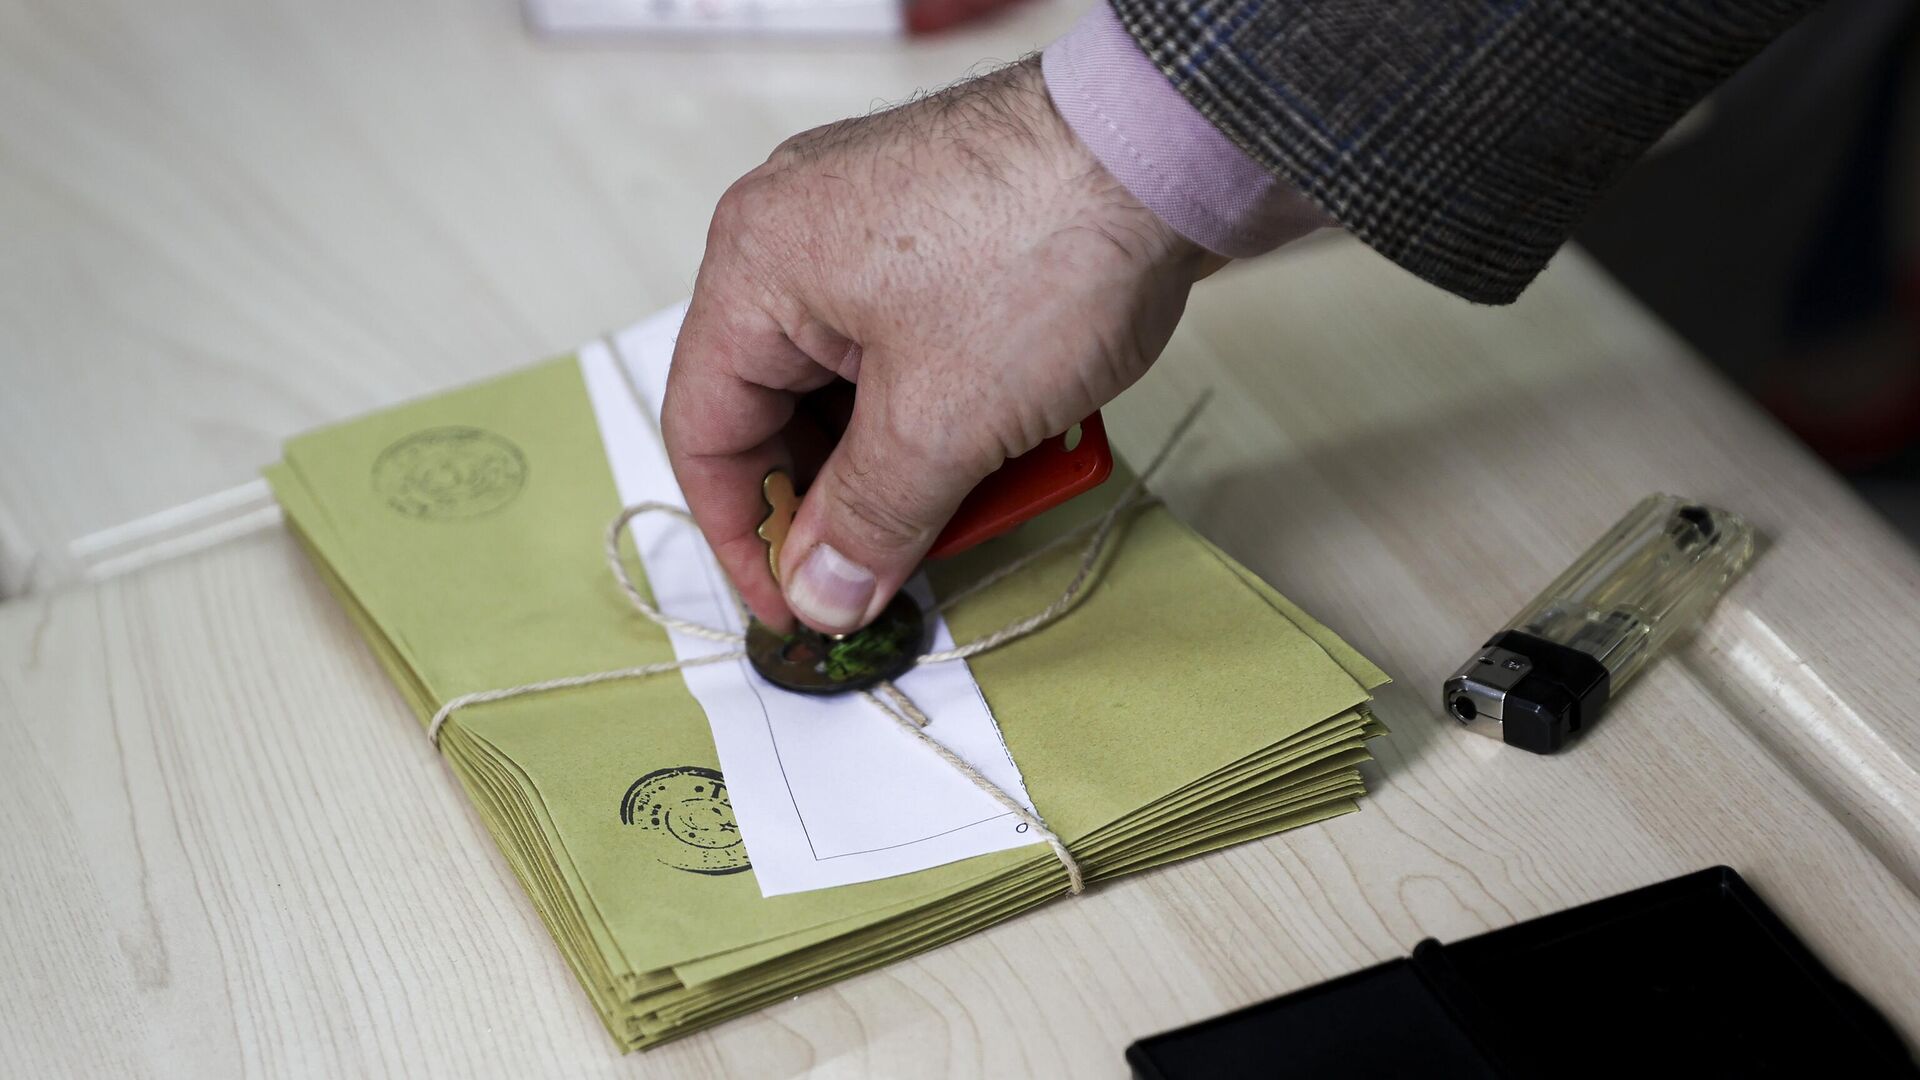 ORC Araştırma, Trabzon anketini açıkladı: İki parti arasında 20 puan fark çıktı